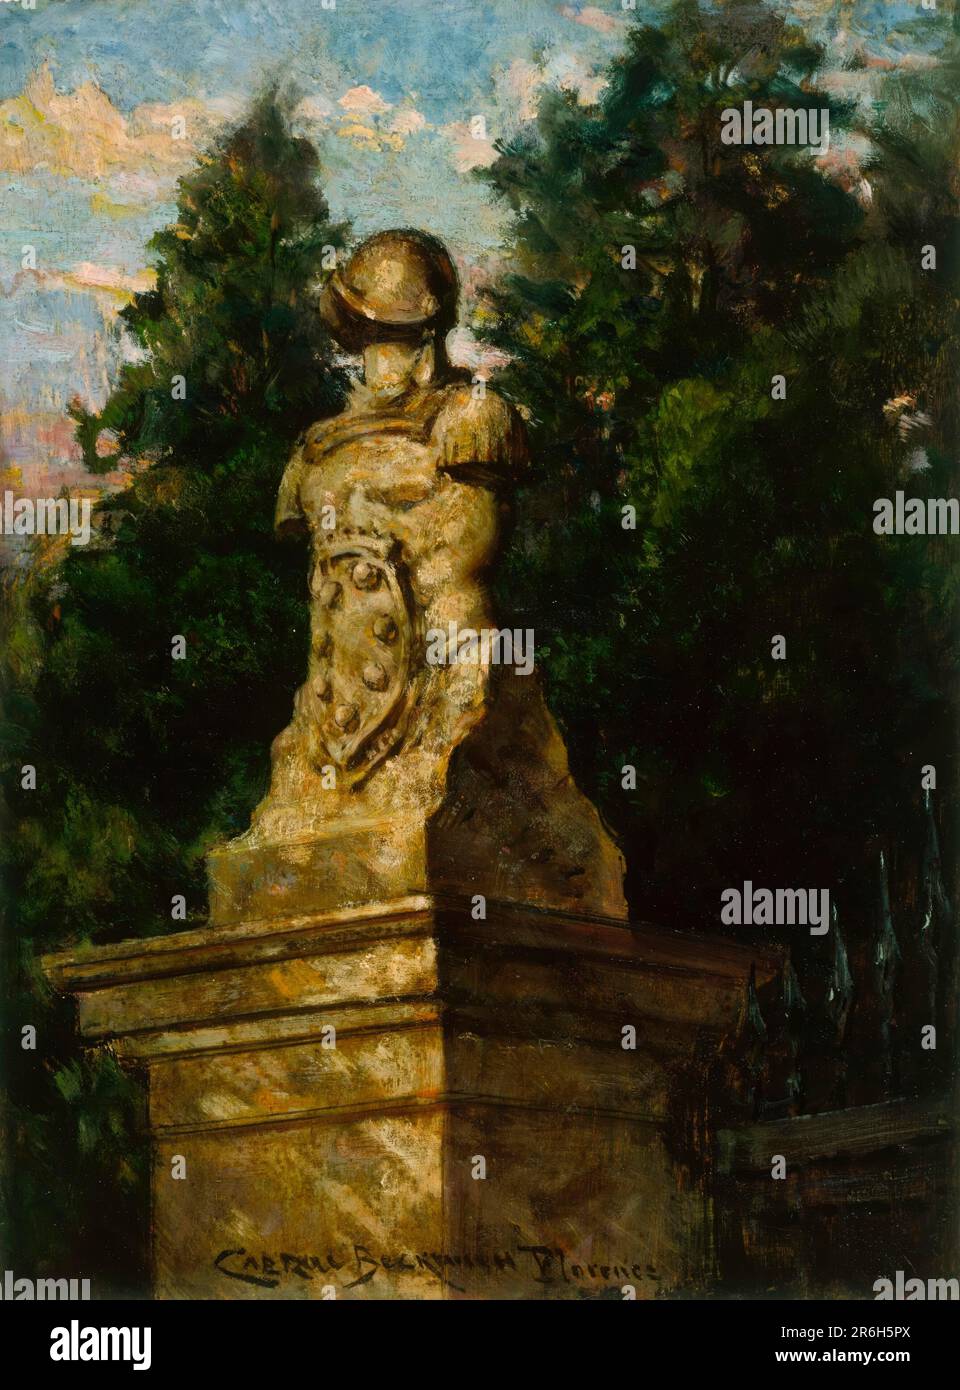 Porte de Modigliani. Date: 1910. huile sur bois. Musée: Smithsonian American Art Museum. Banque D'Images